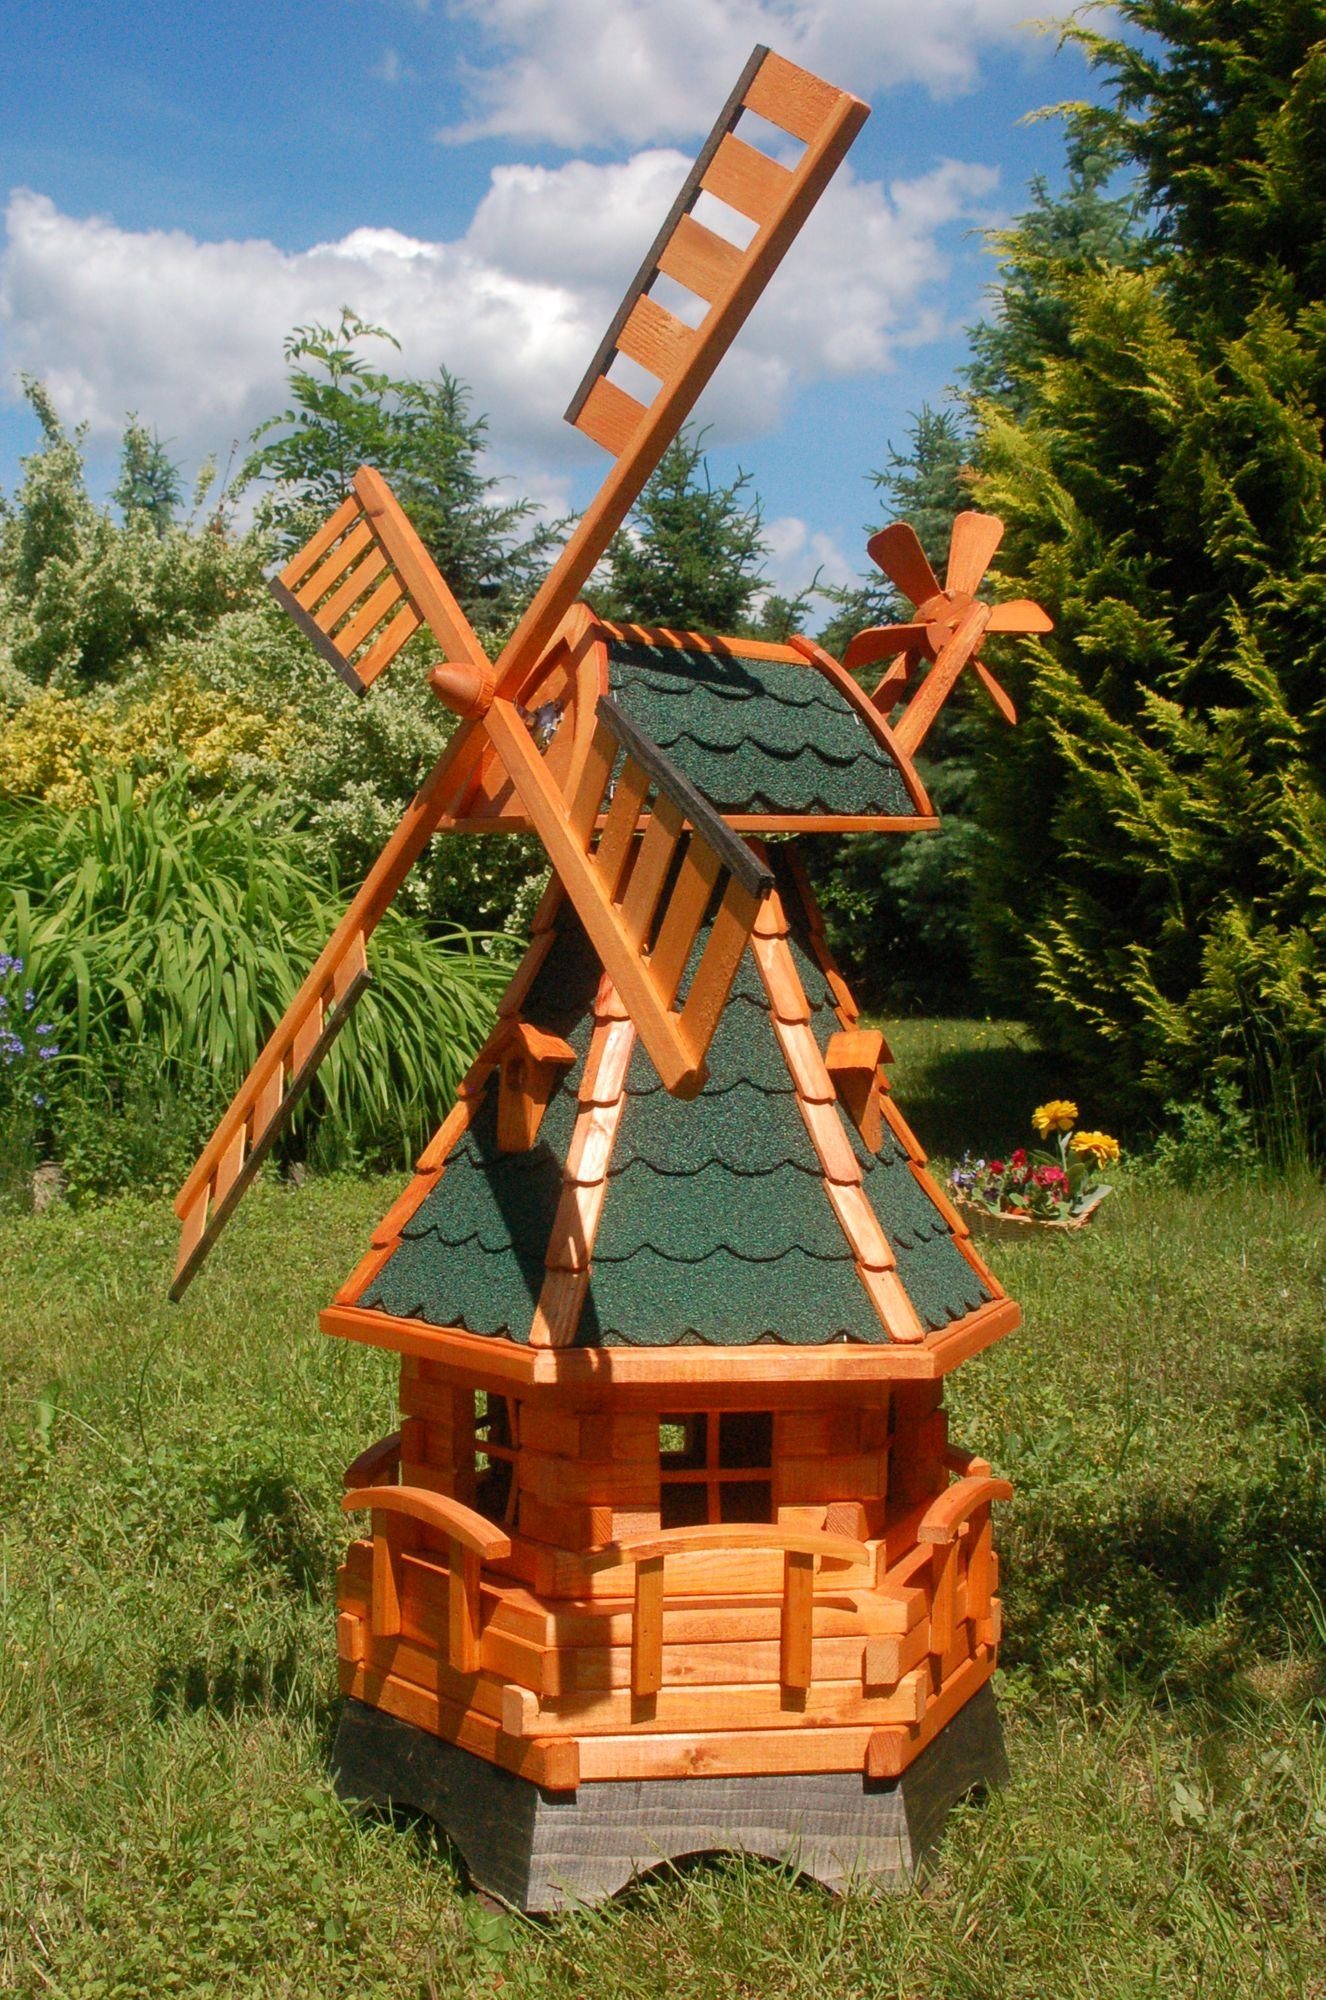 DSH DEKO SHOP HANNUSCH Gartenfigur Norddeutsche Windmühle 1,25m kugelgelagert, verschieden Farben Braun - Grün